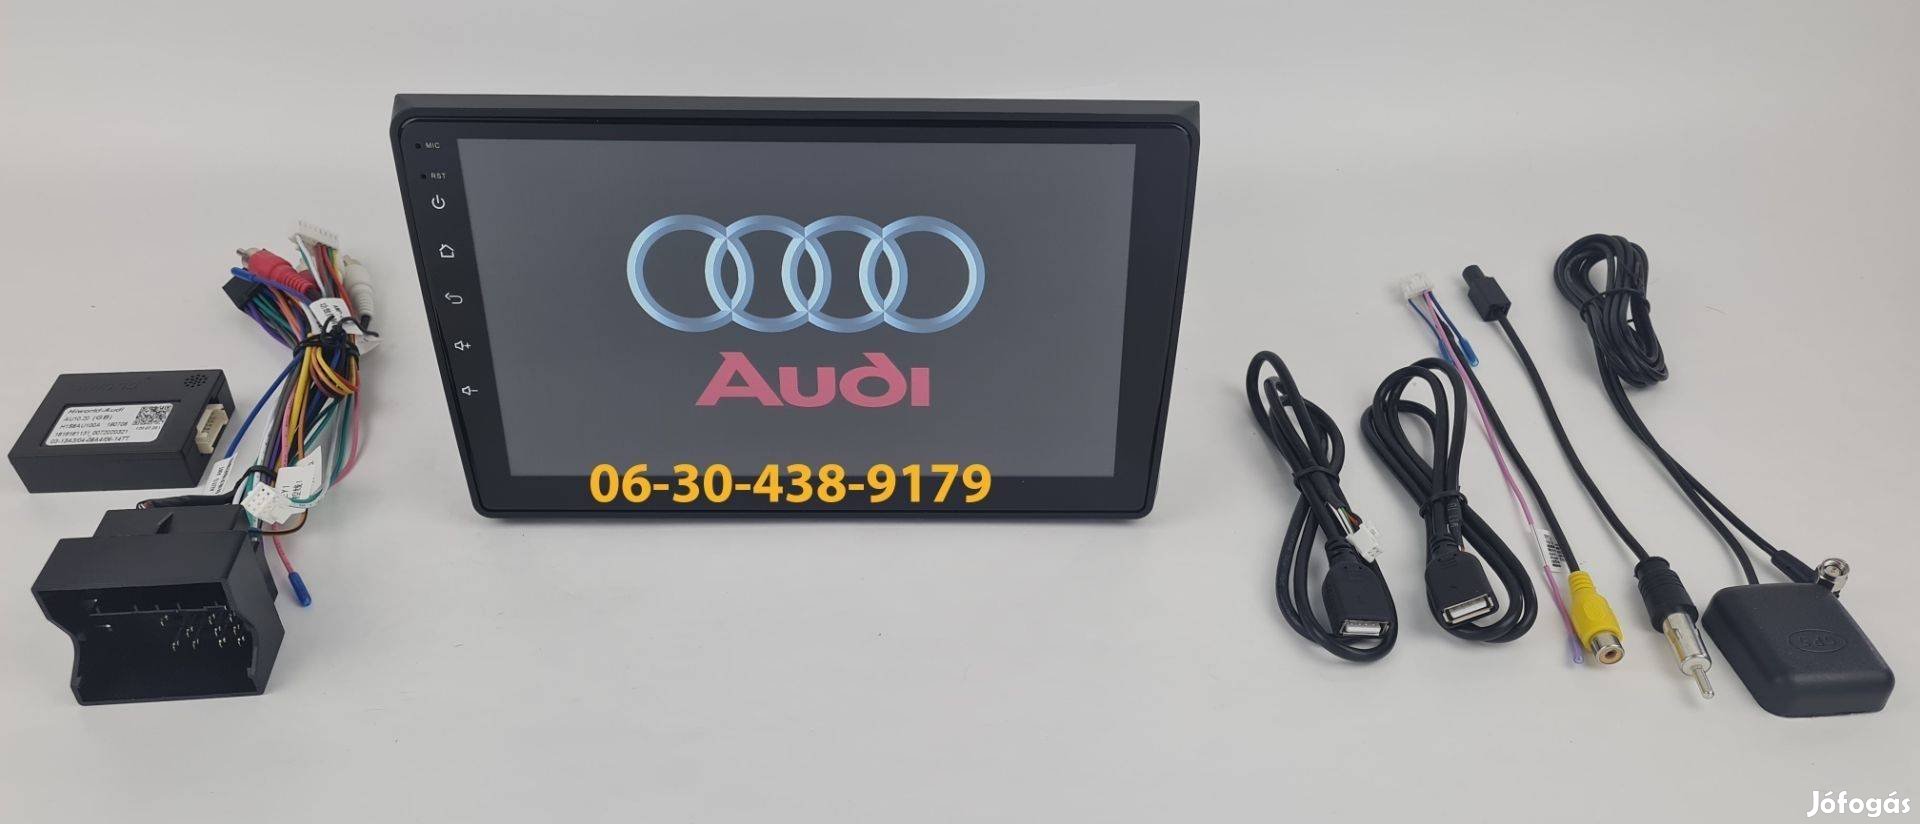 AUDI A4 Android autórádió fejegység gyári helyre 1-6GB Carplay